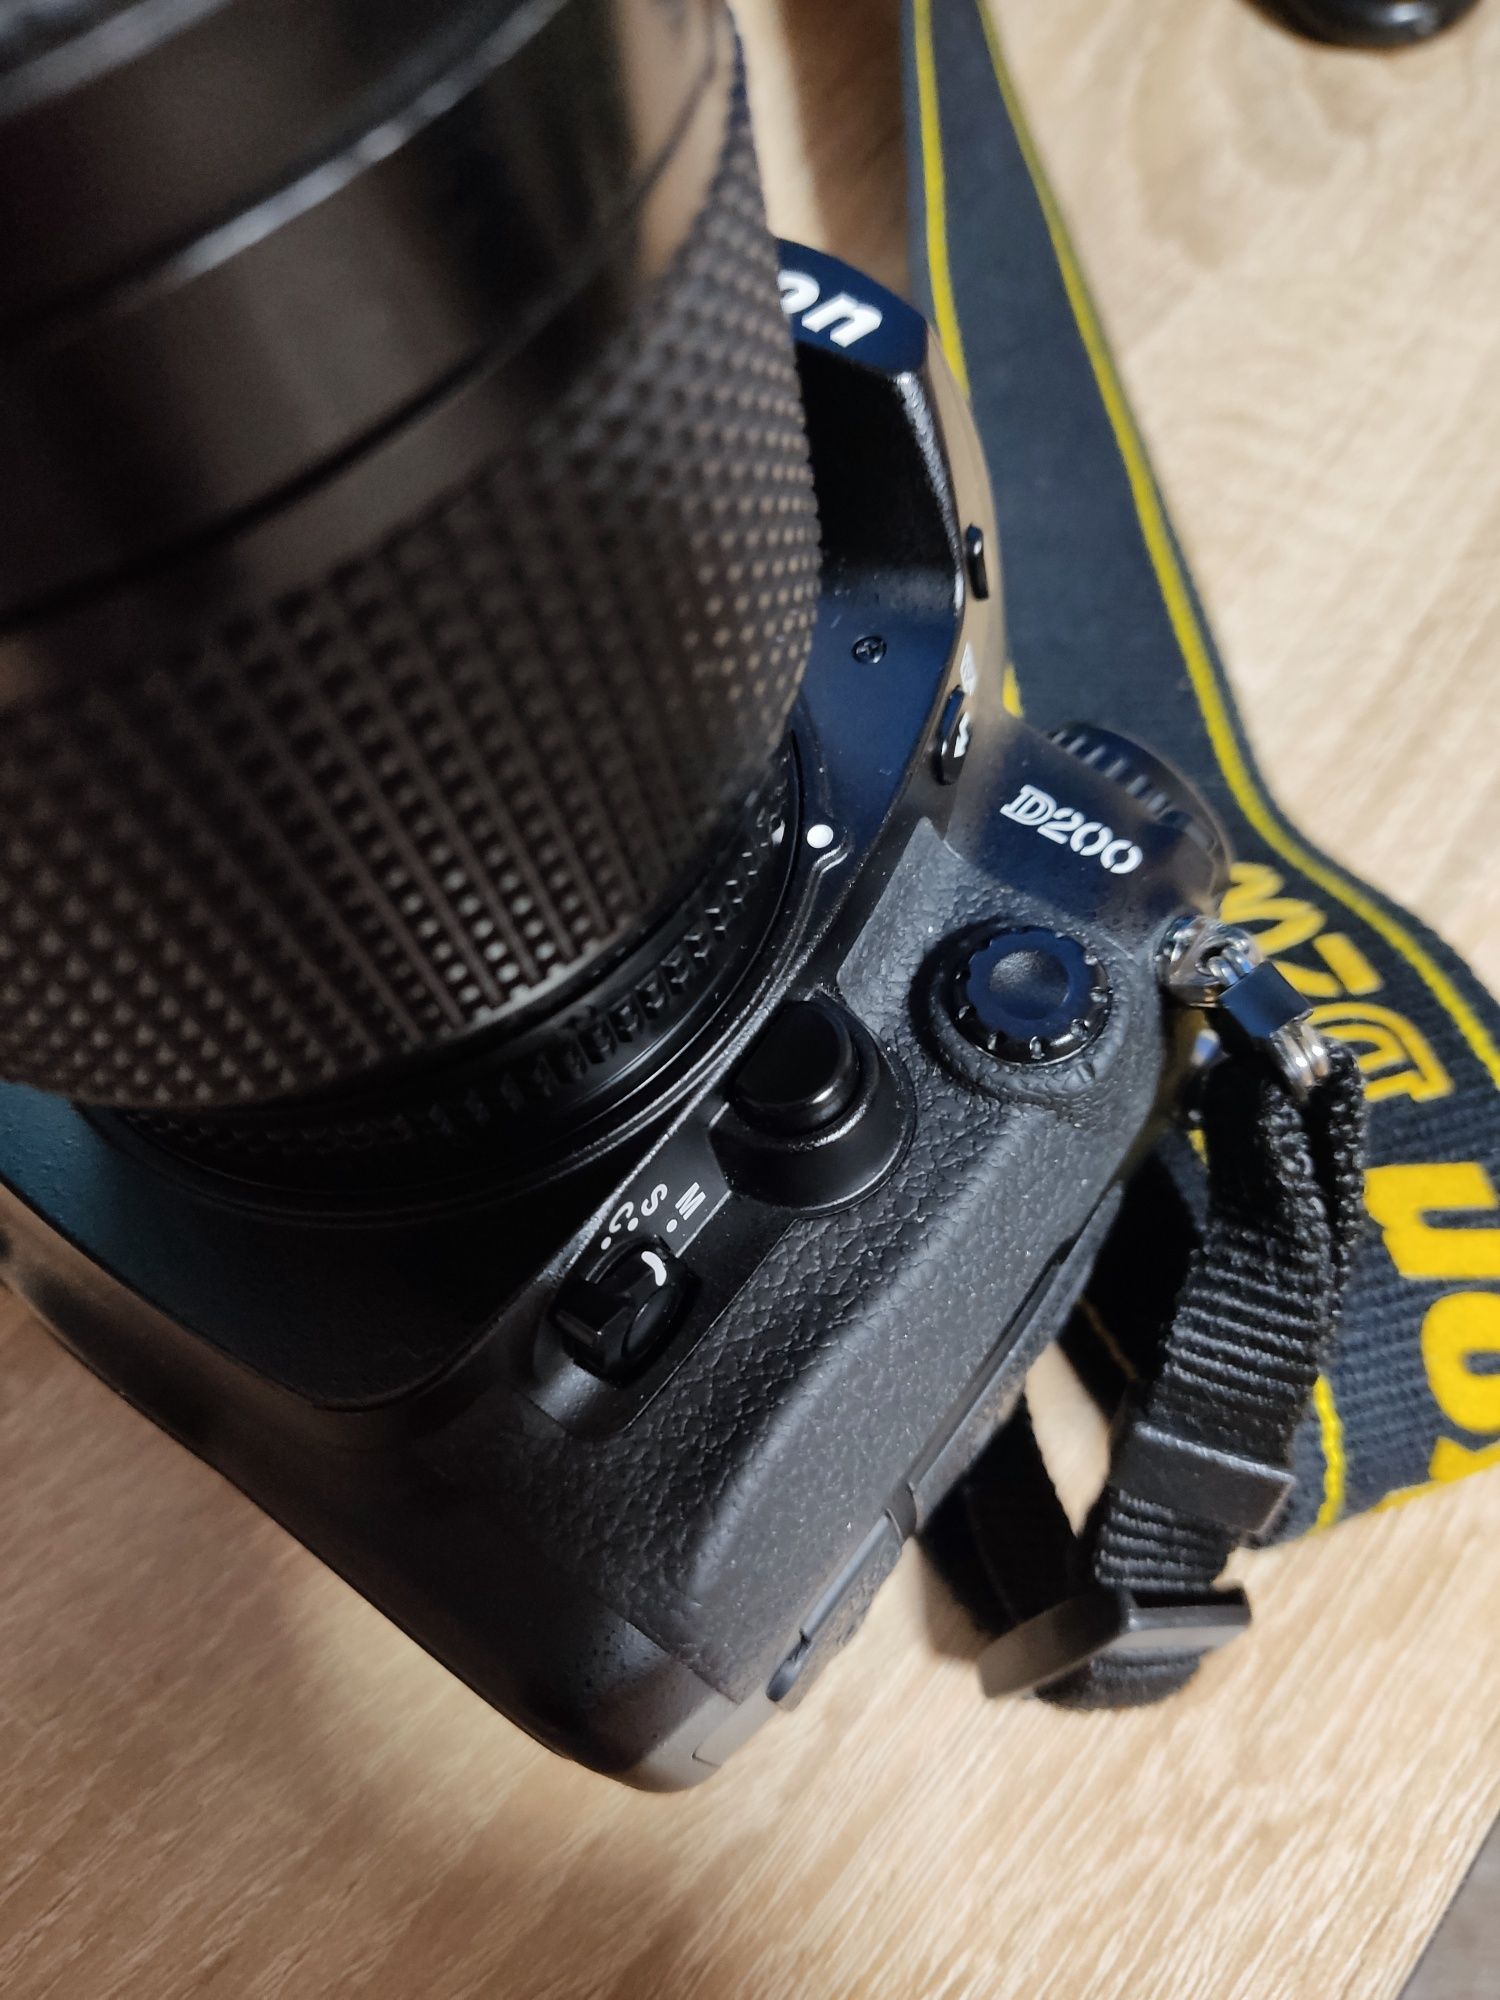 Nikon D200 фотоаппарат